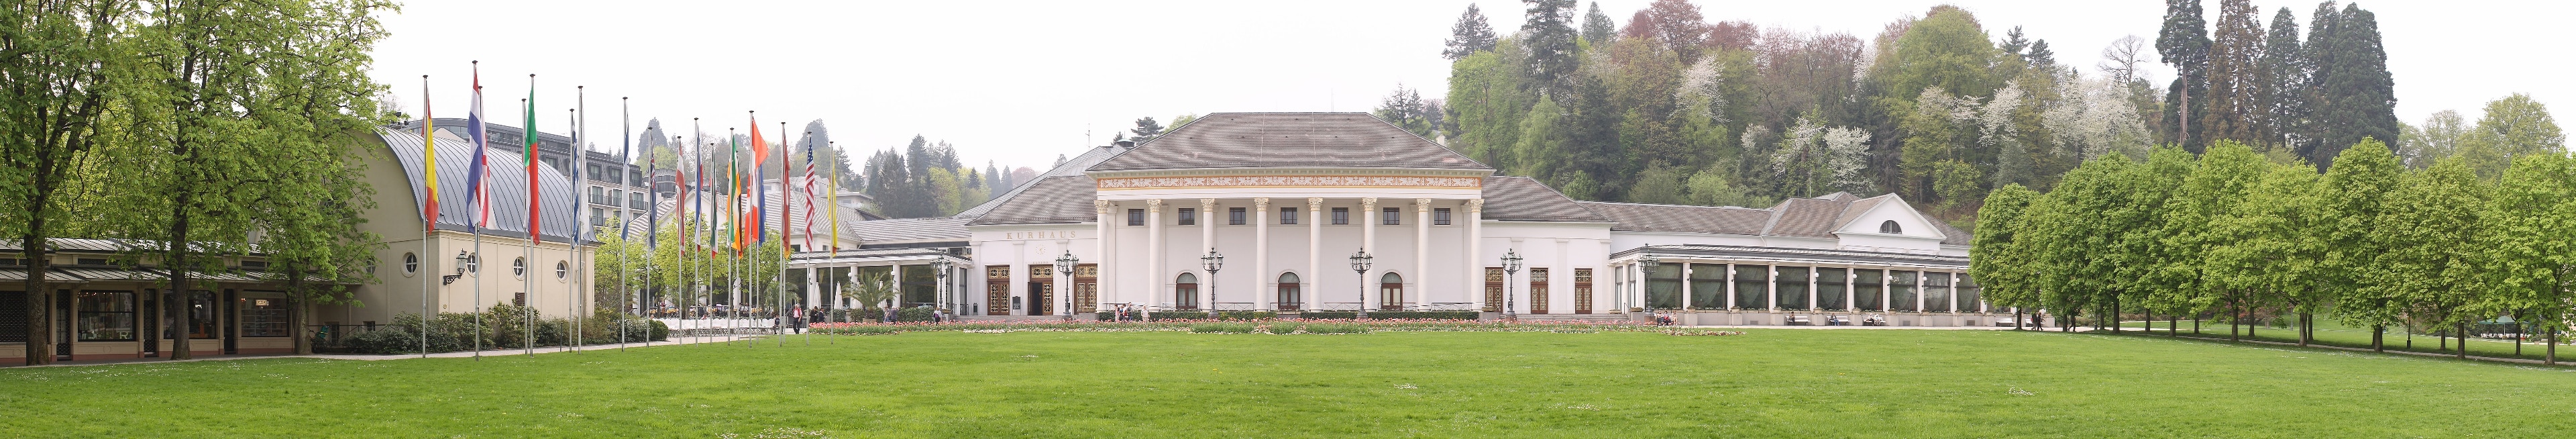 Kurhaus with its park in Baden-Baden, Germany